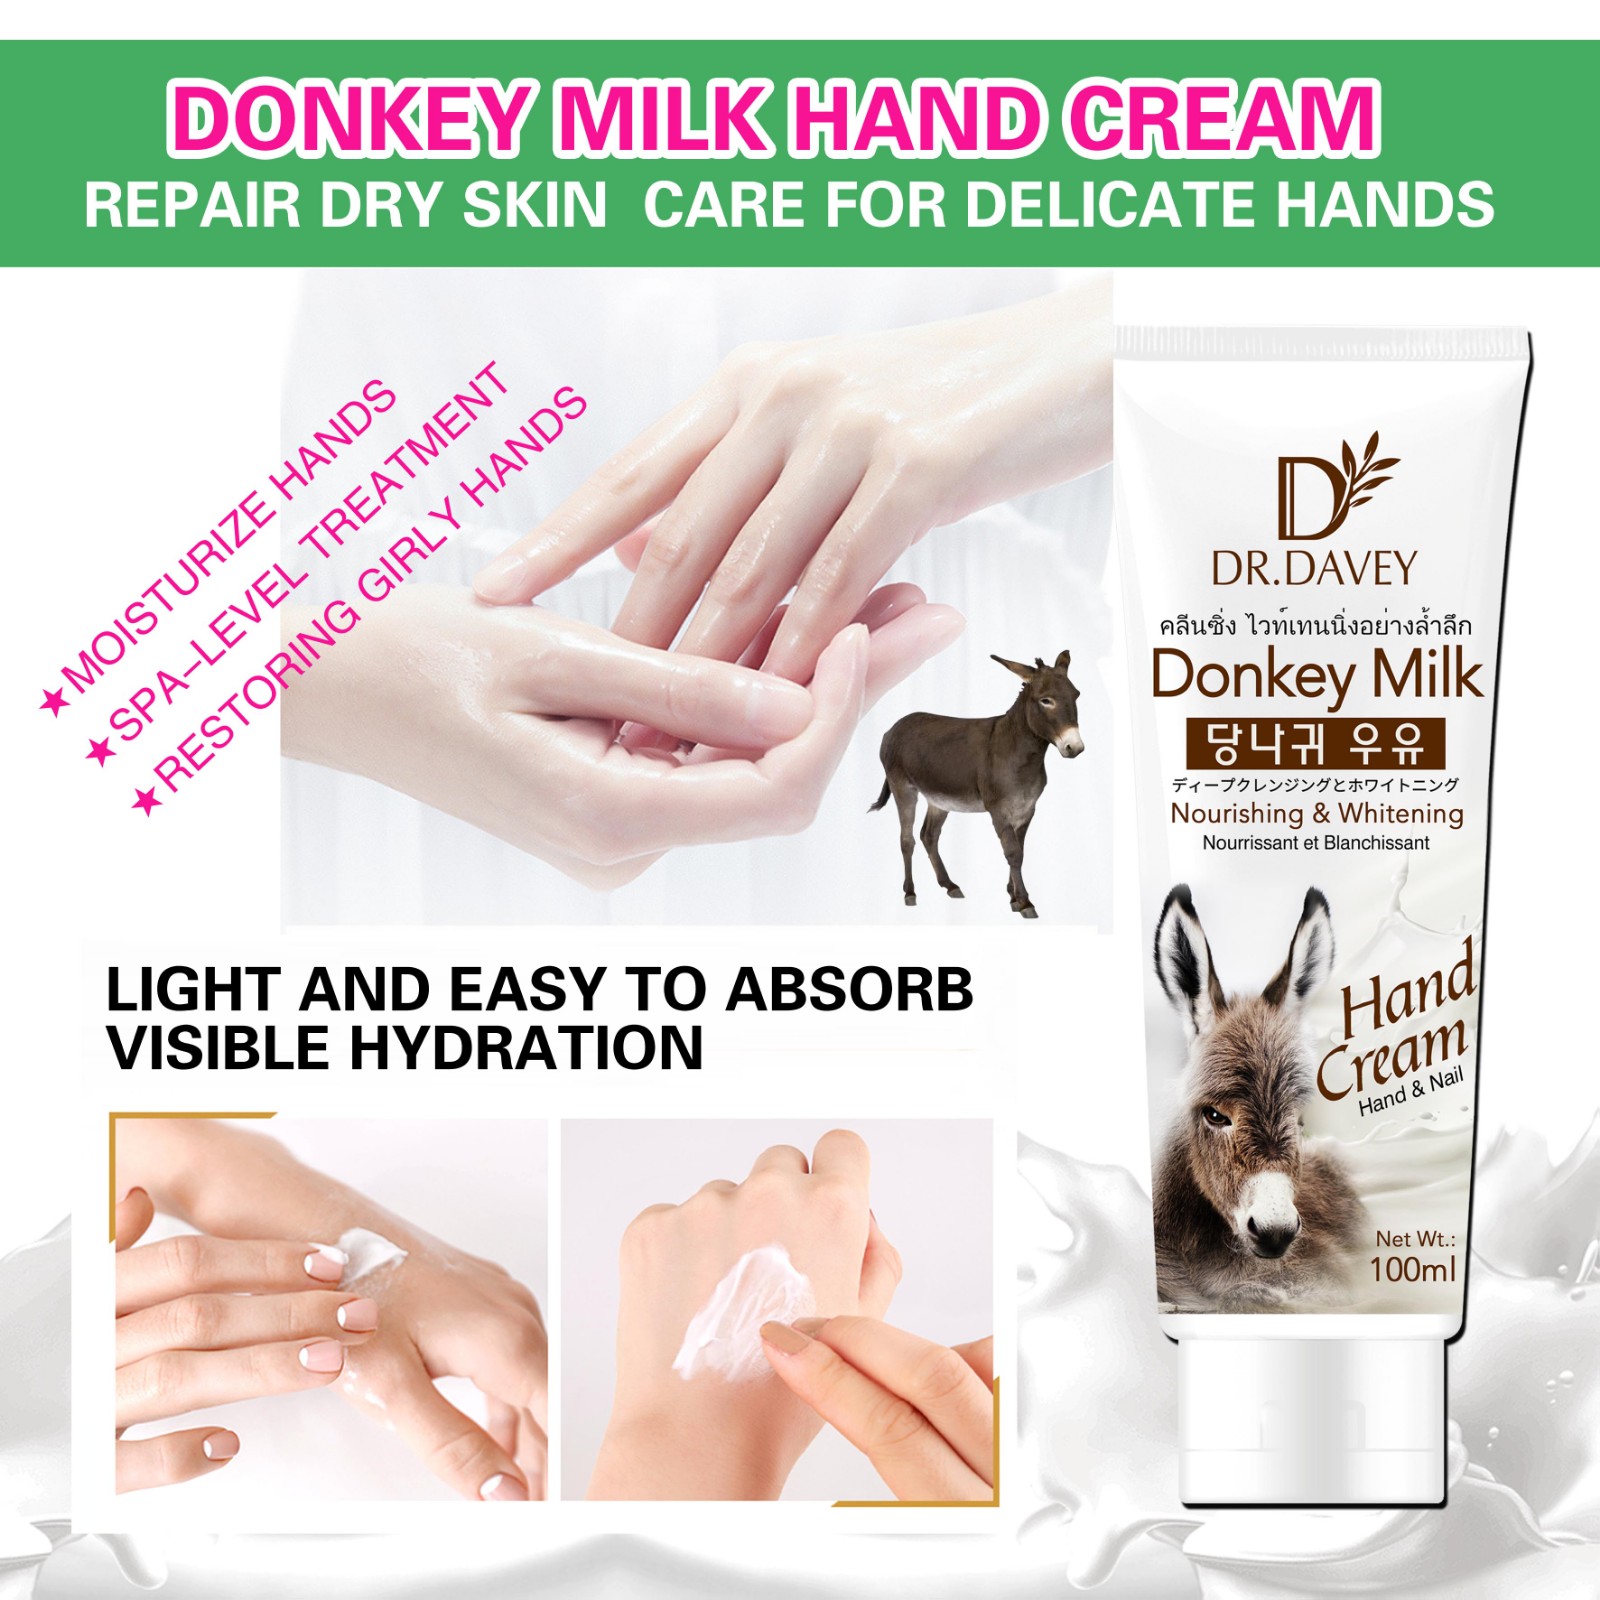  Donkey milk hand cream